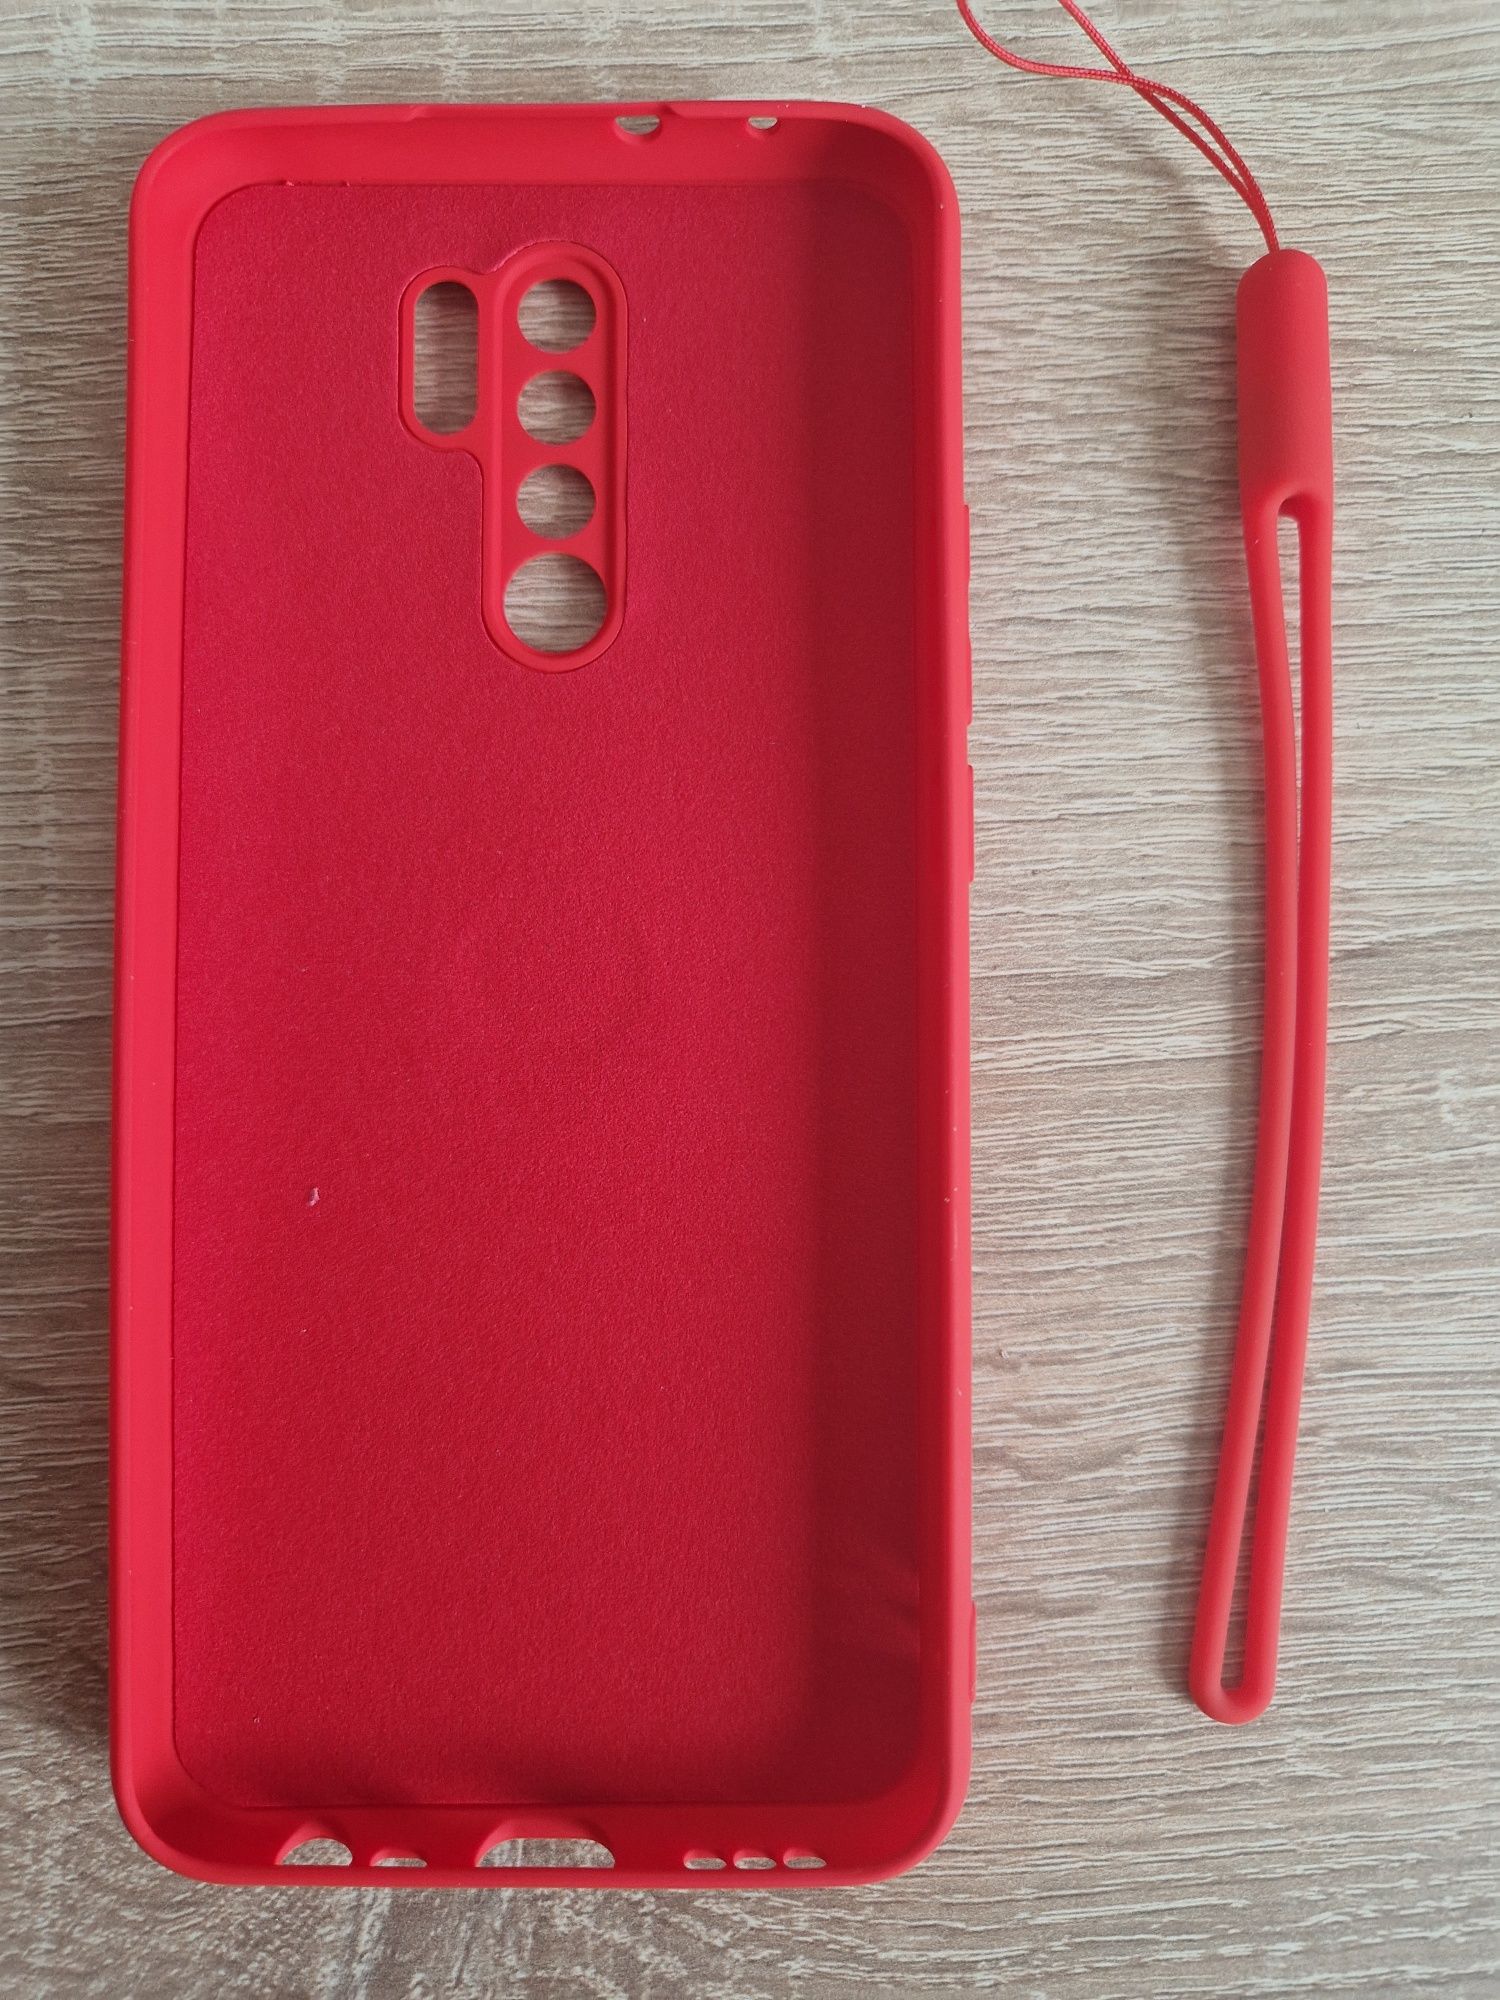 Etui Vennus Silicone Ring do Xiaomi Redmi 9 Czerwony